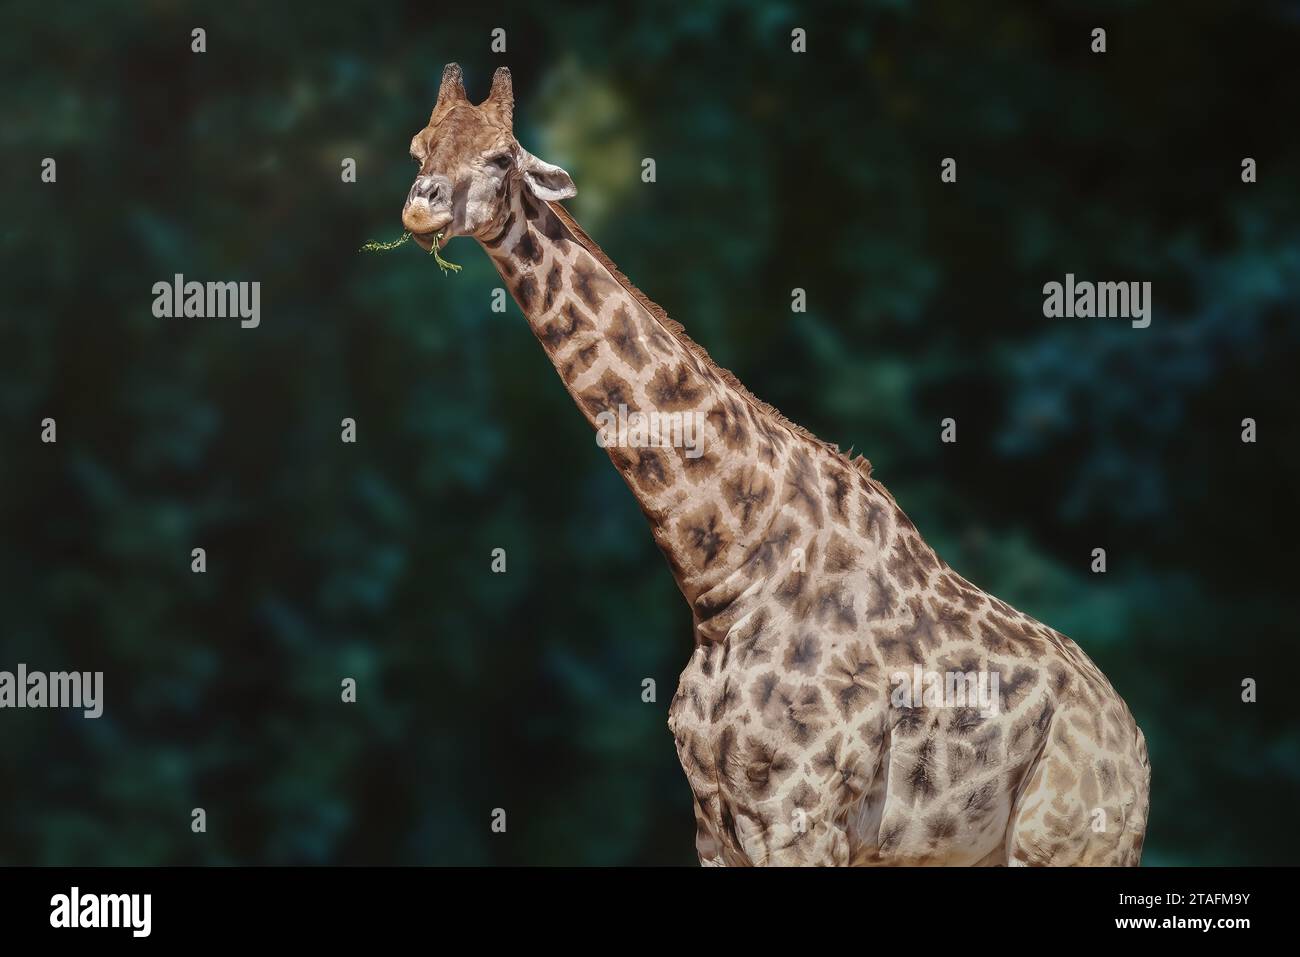 Giraffe eating plants (Giraffa camelopardalis) Stock Photo